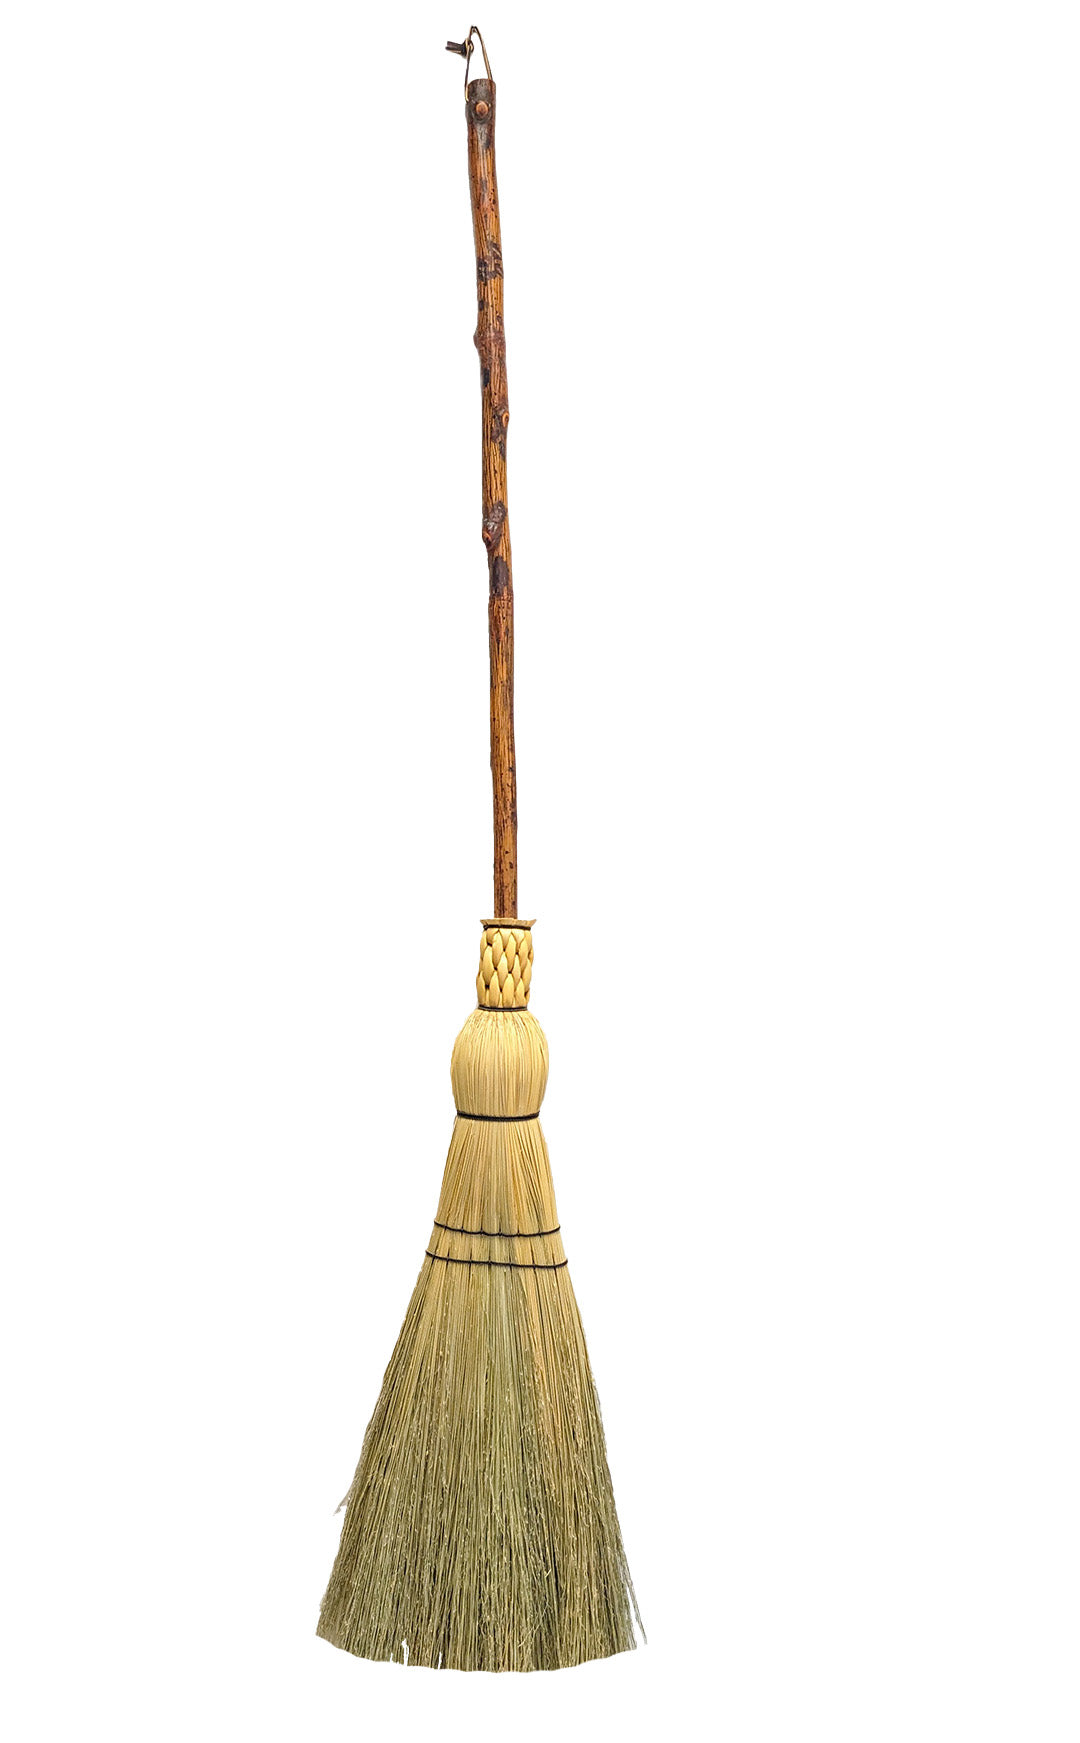 Hickory Handle Floor Brooms